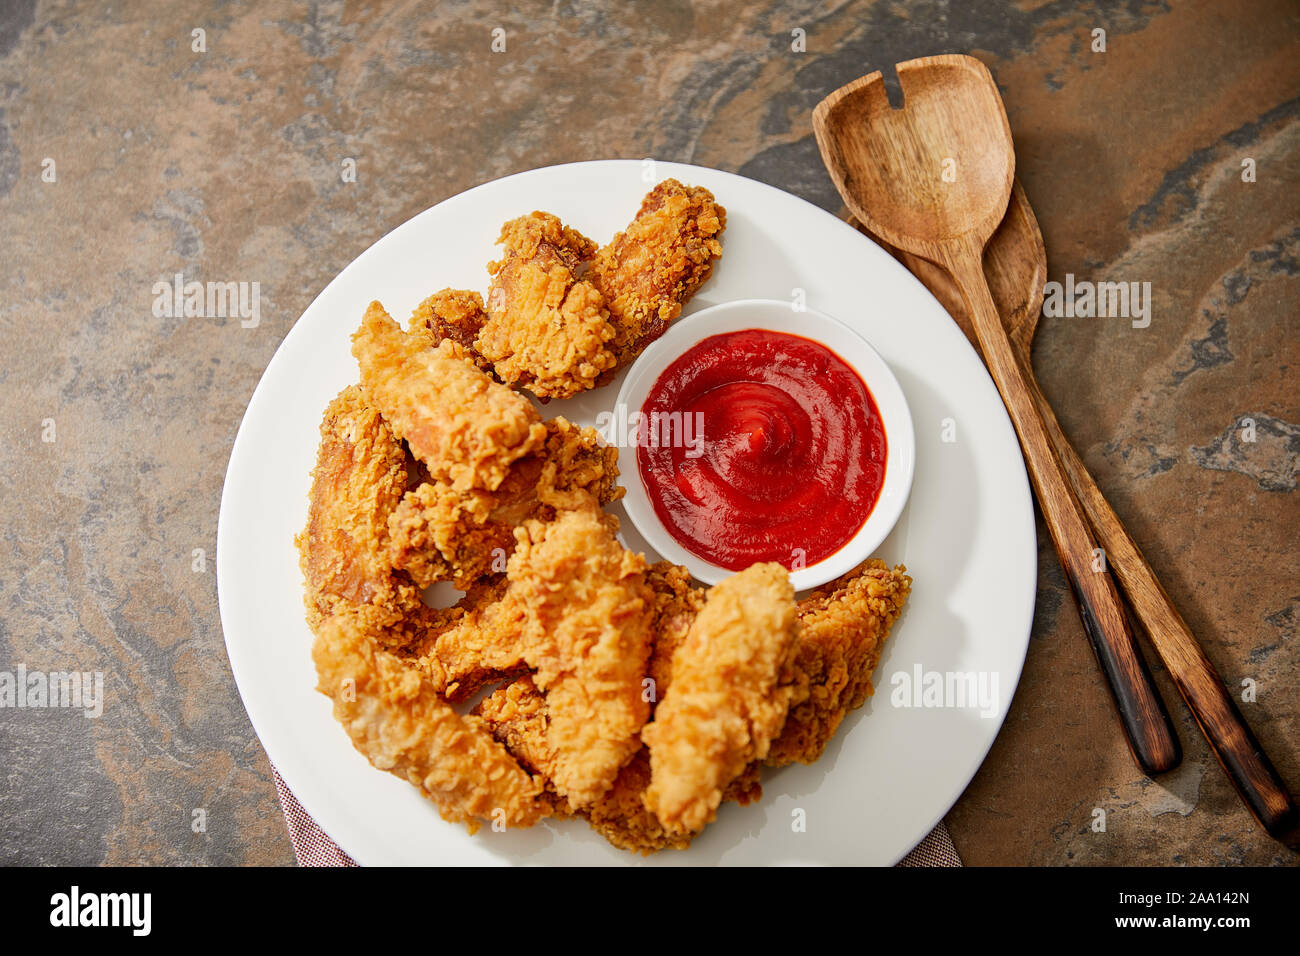 Vue de dessus de délicieux nuggets de poulet avec du ketchup et spatules en bois sur la surface de pierre Banque D'Images